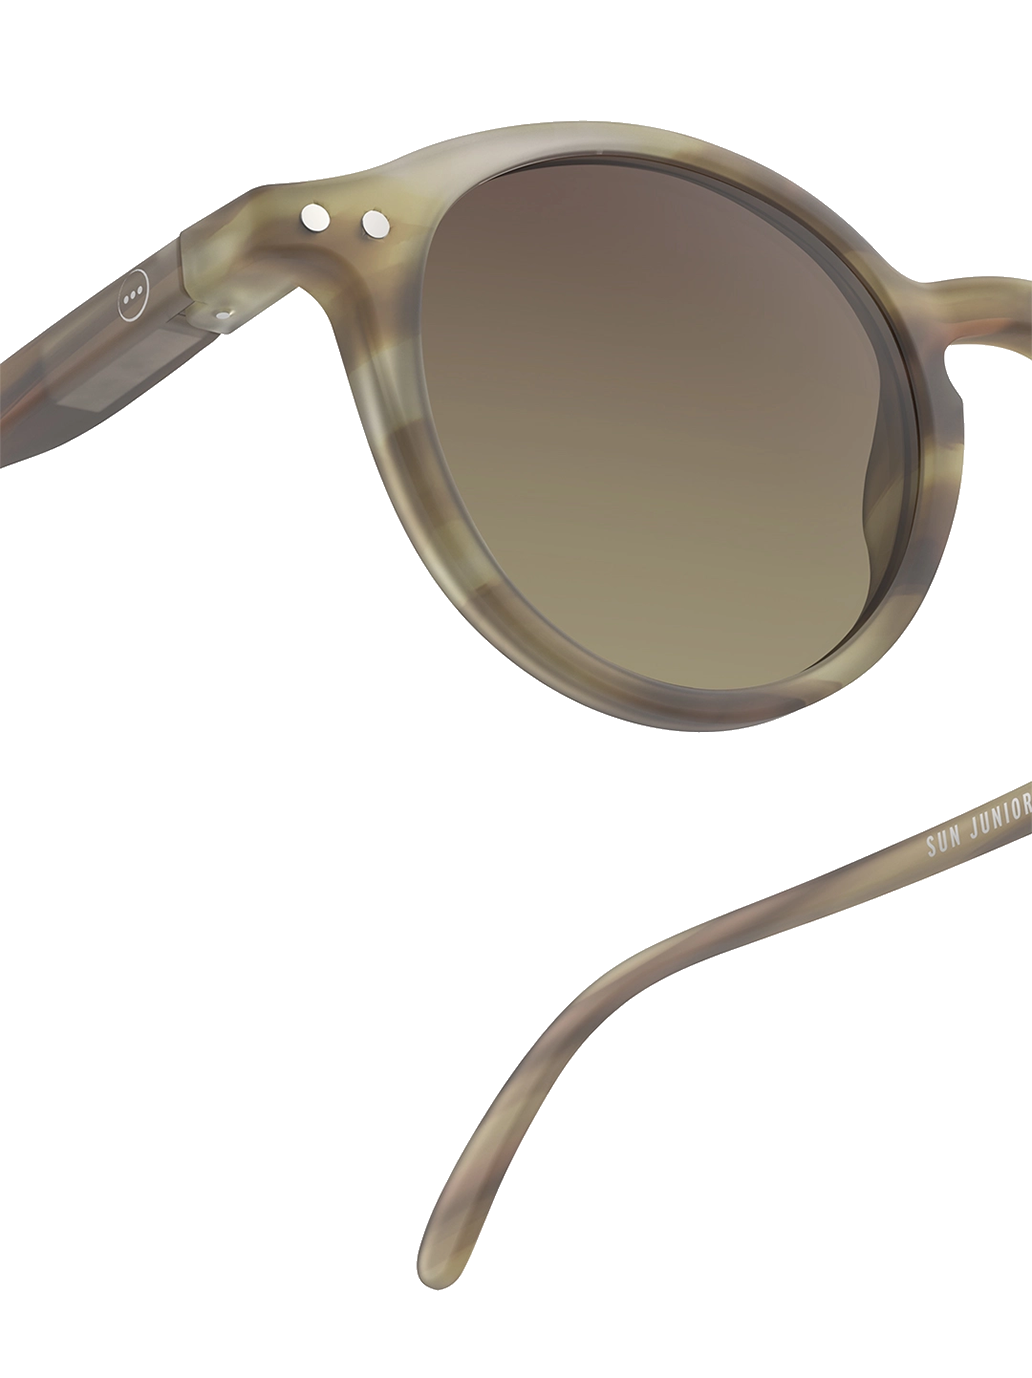 Adulto las gafas de sol icónicas